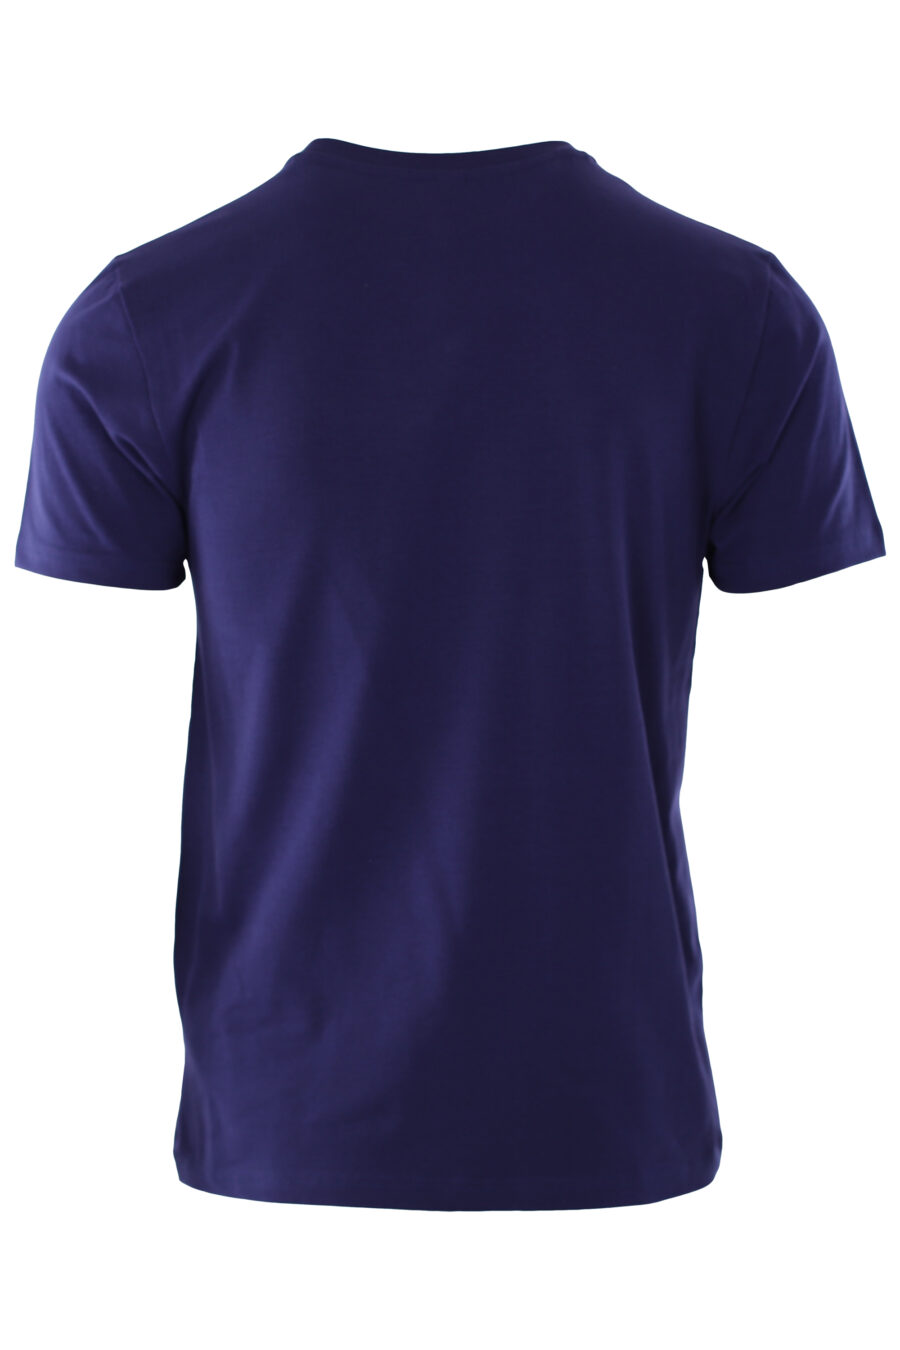 Camiseta azul con logo oso "underbear" - IMG 6594